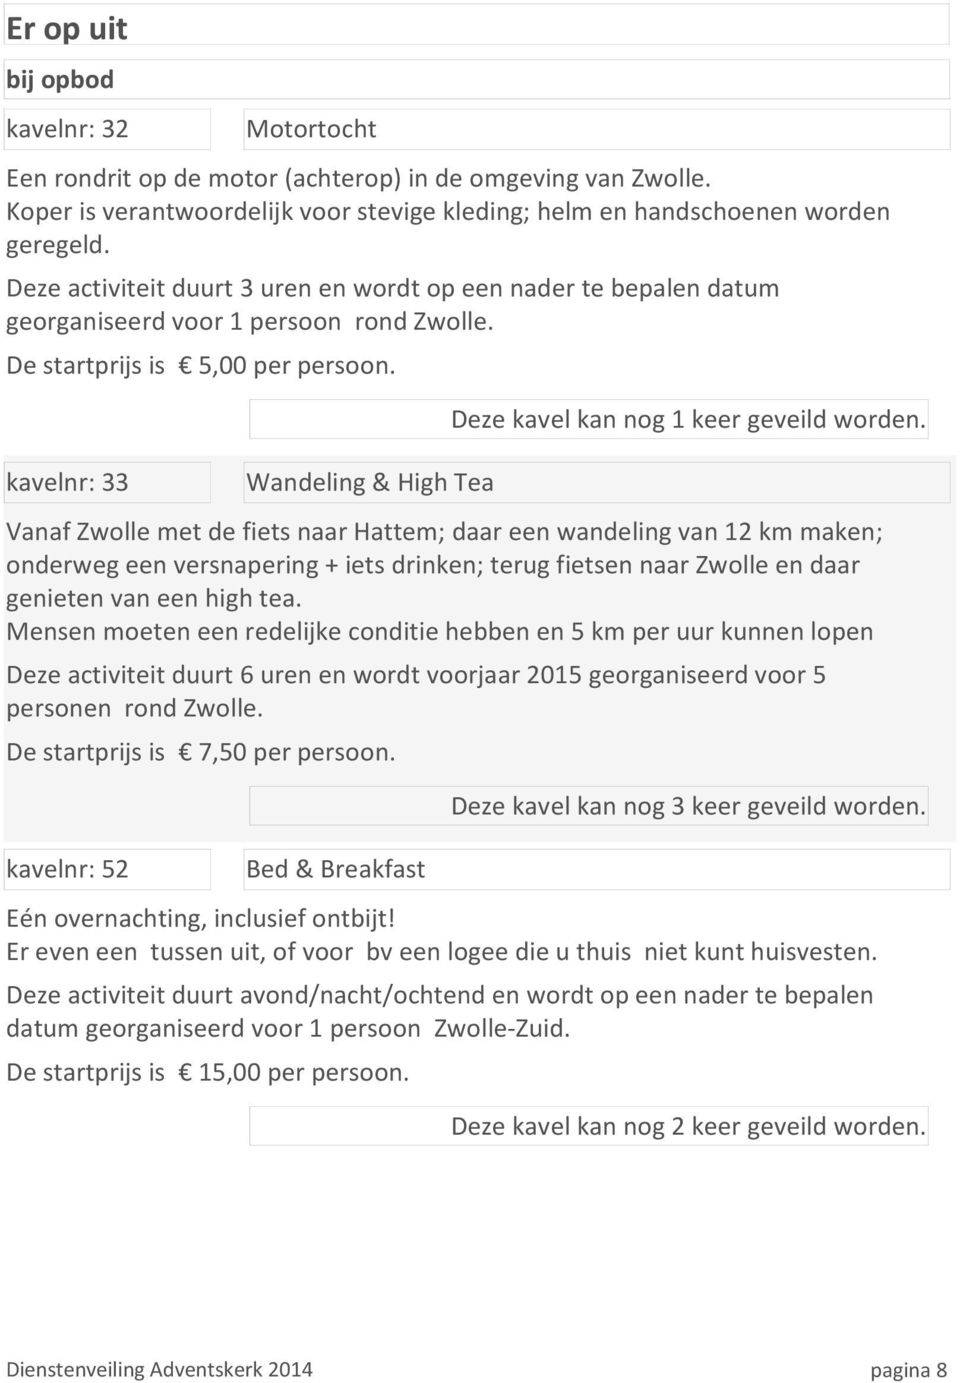 kavelnr: 33 Wandeling & High Tea Vanaf Zwolle met de fiets naar Hattem; daar een wandeling van 12 km maken; onderweg een versnapering + iets drinken; terug fietsen naar Zwolle en daar genieten van